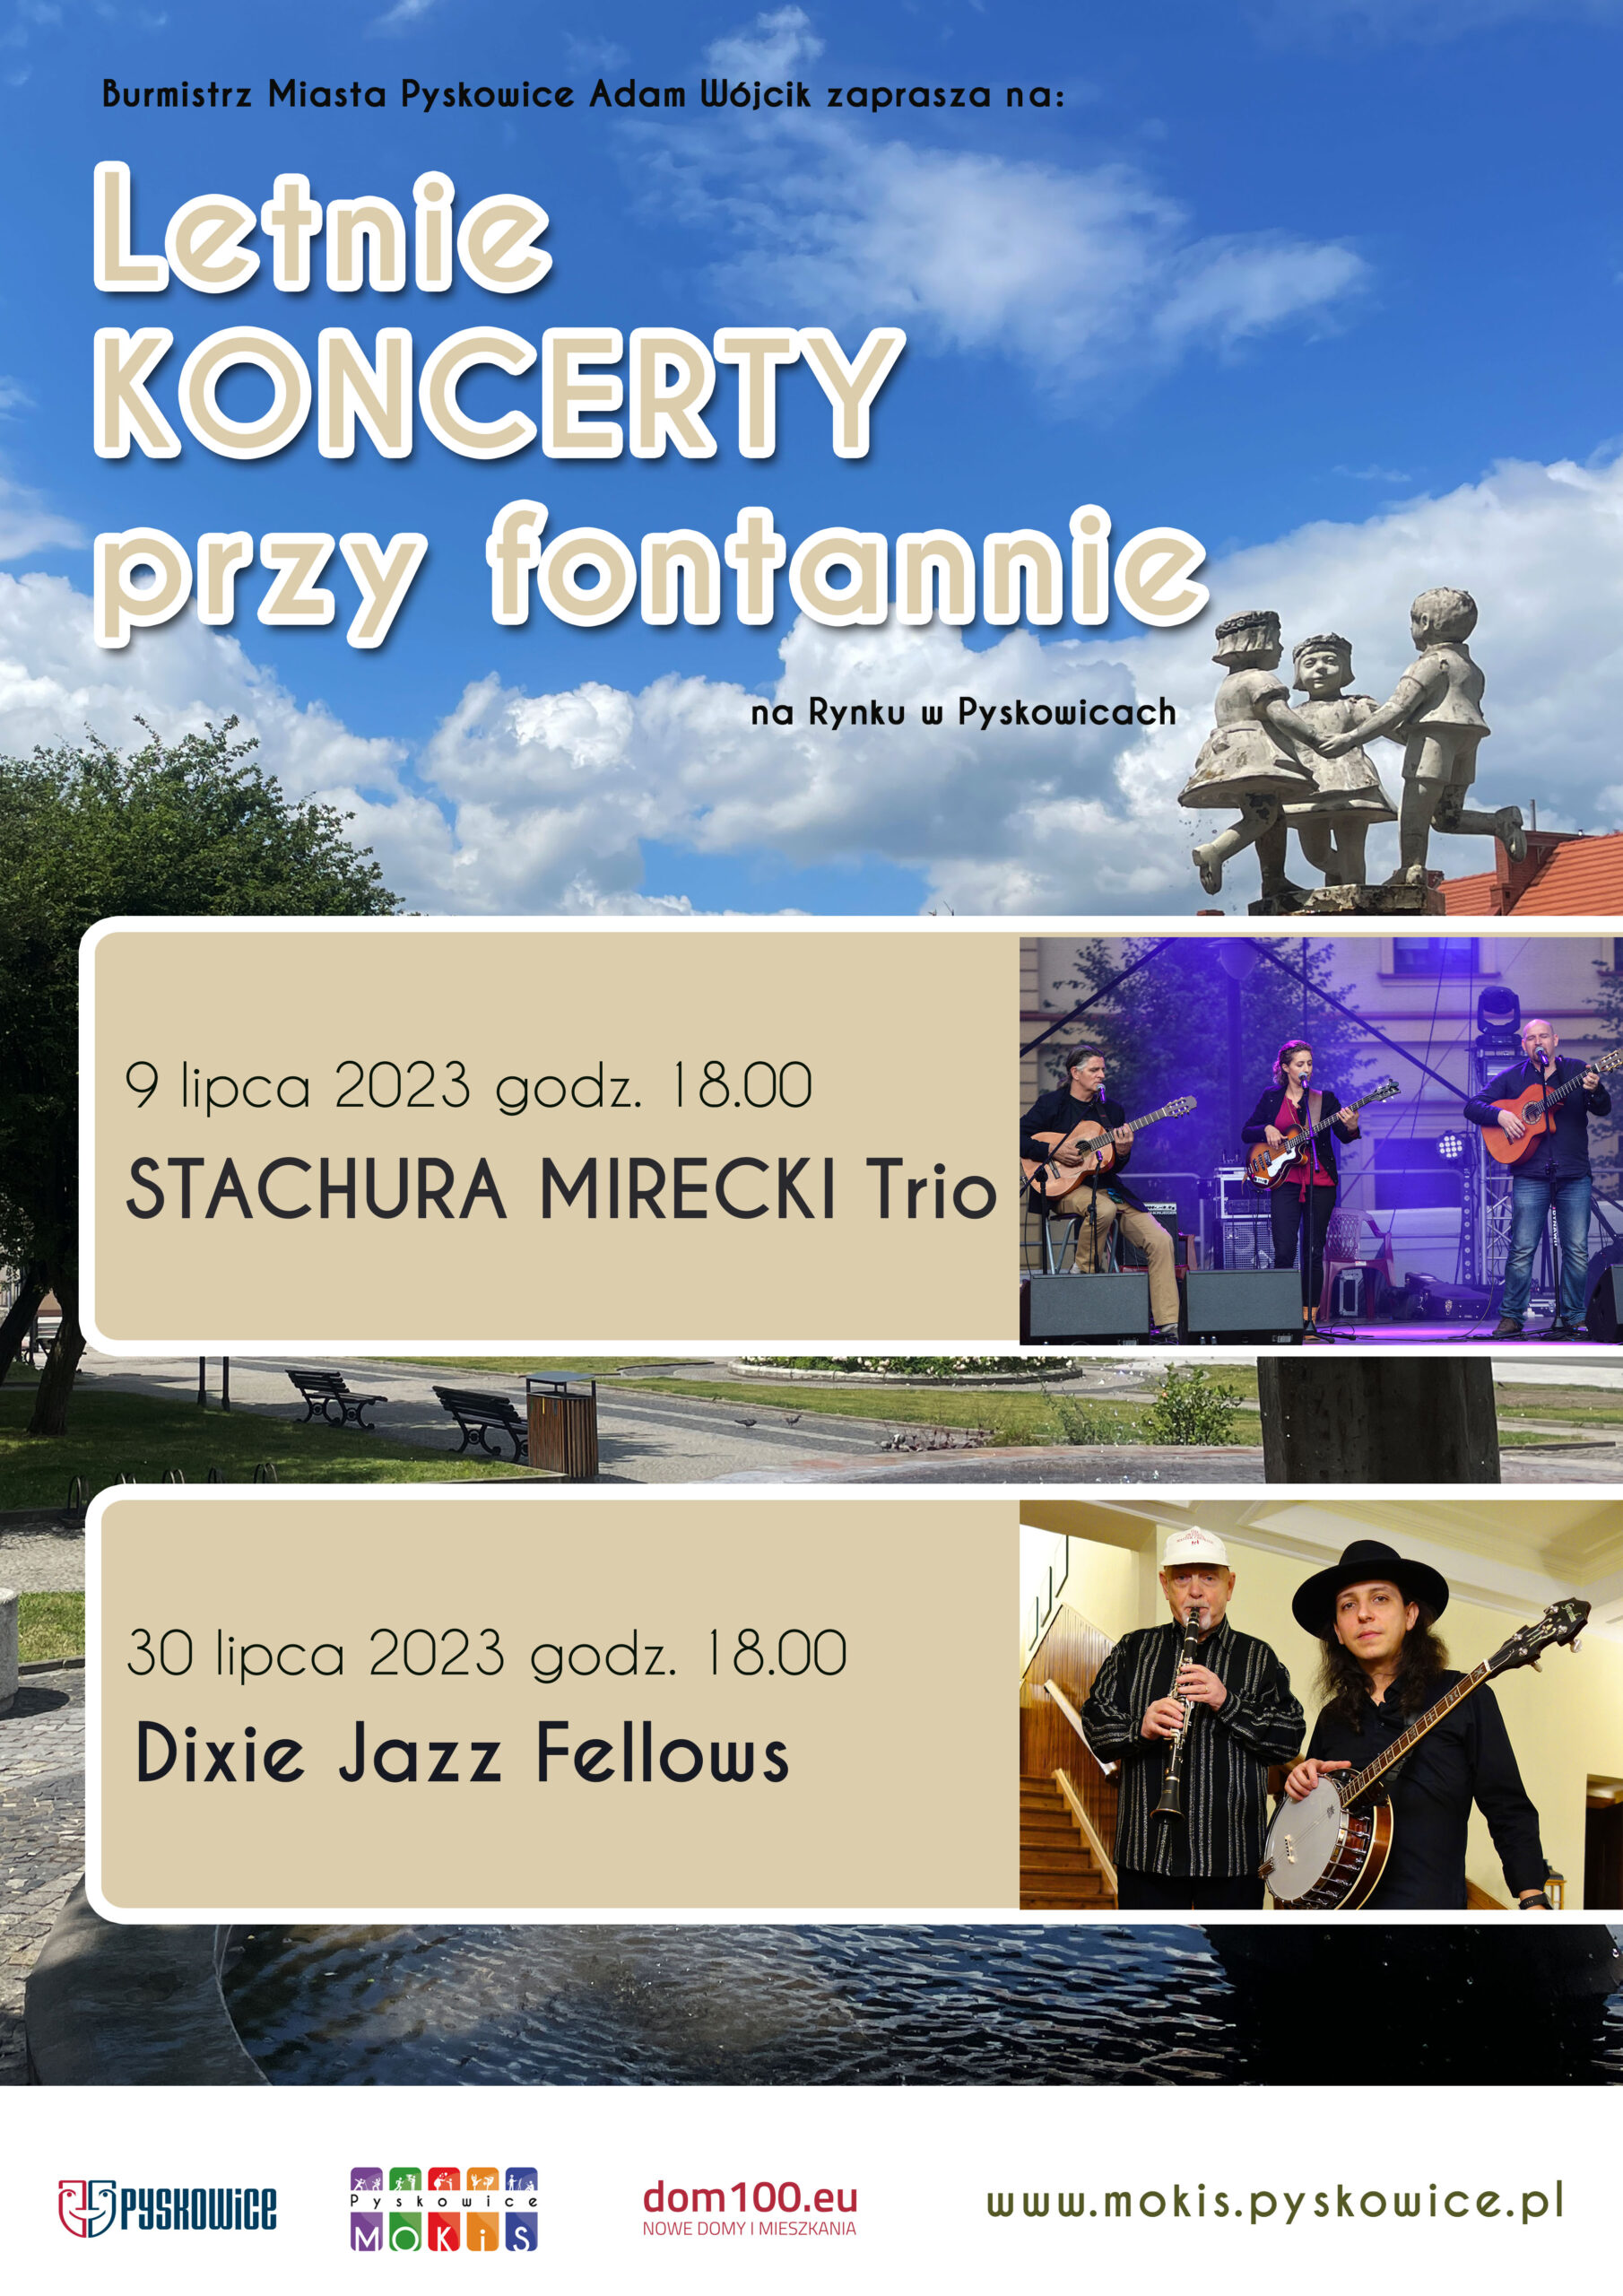 Plakat promujący letnie koncerty przy fontannie na rynku w Pyskowicach